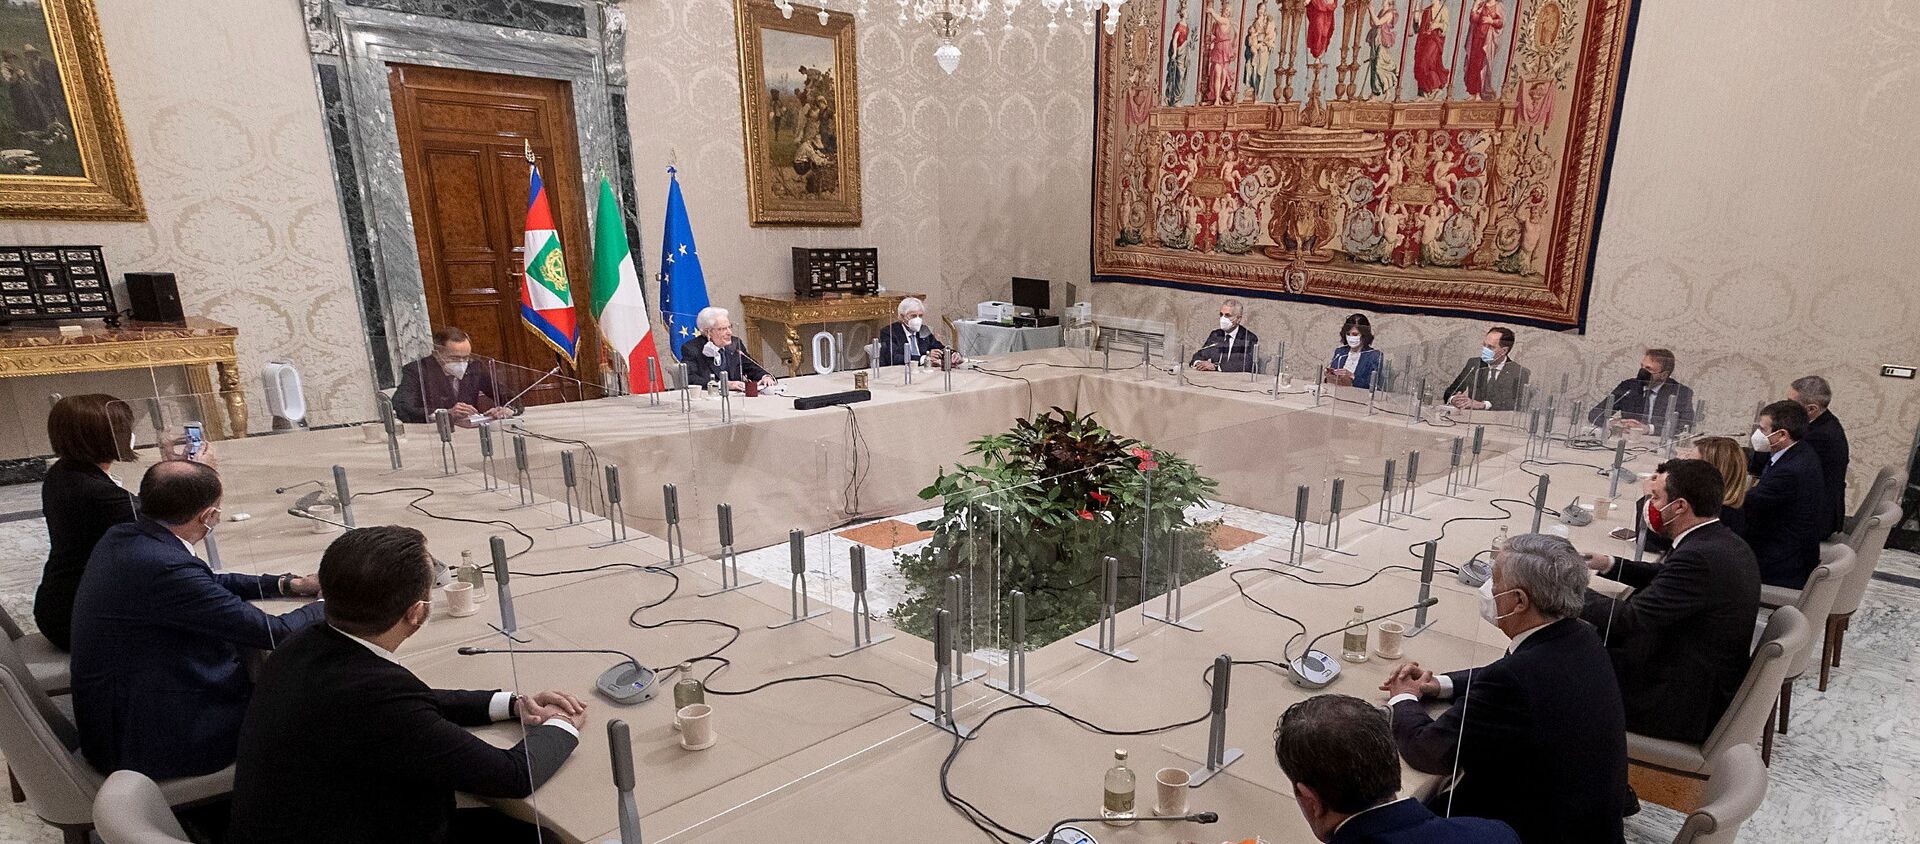 El presidente italiano Sergio Mattarella mantiene conversaciones en el Palacio del Quirinal en Roma, Italia - Sputnik Mundo, 1920, 01.02.2021